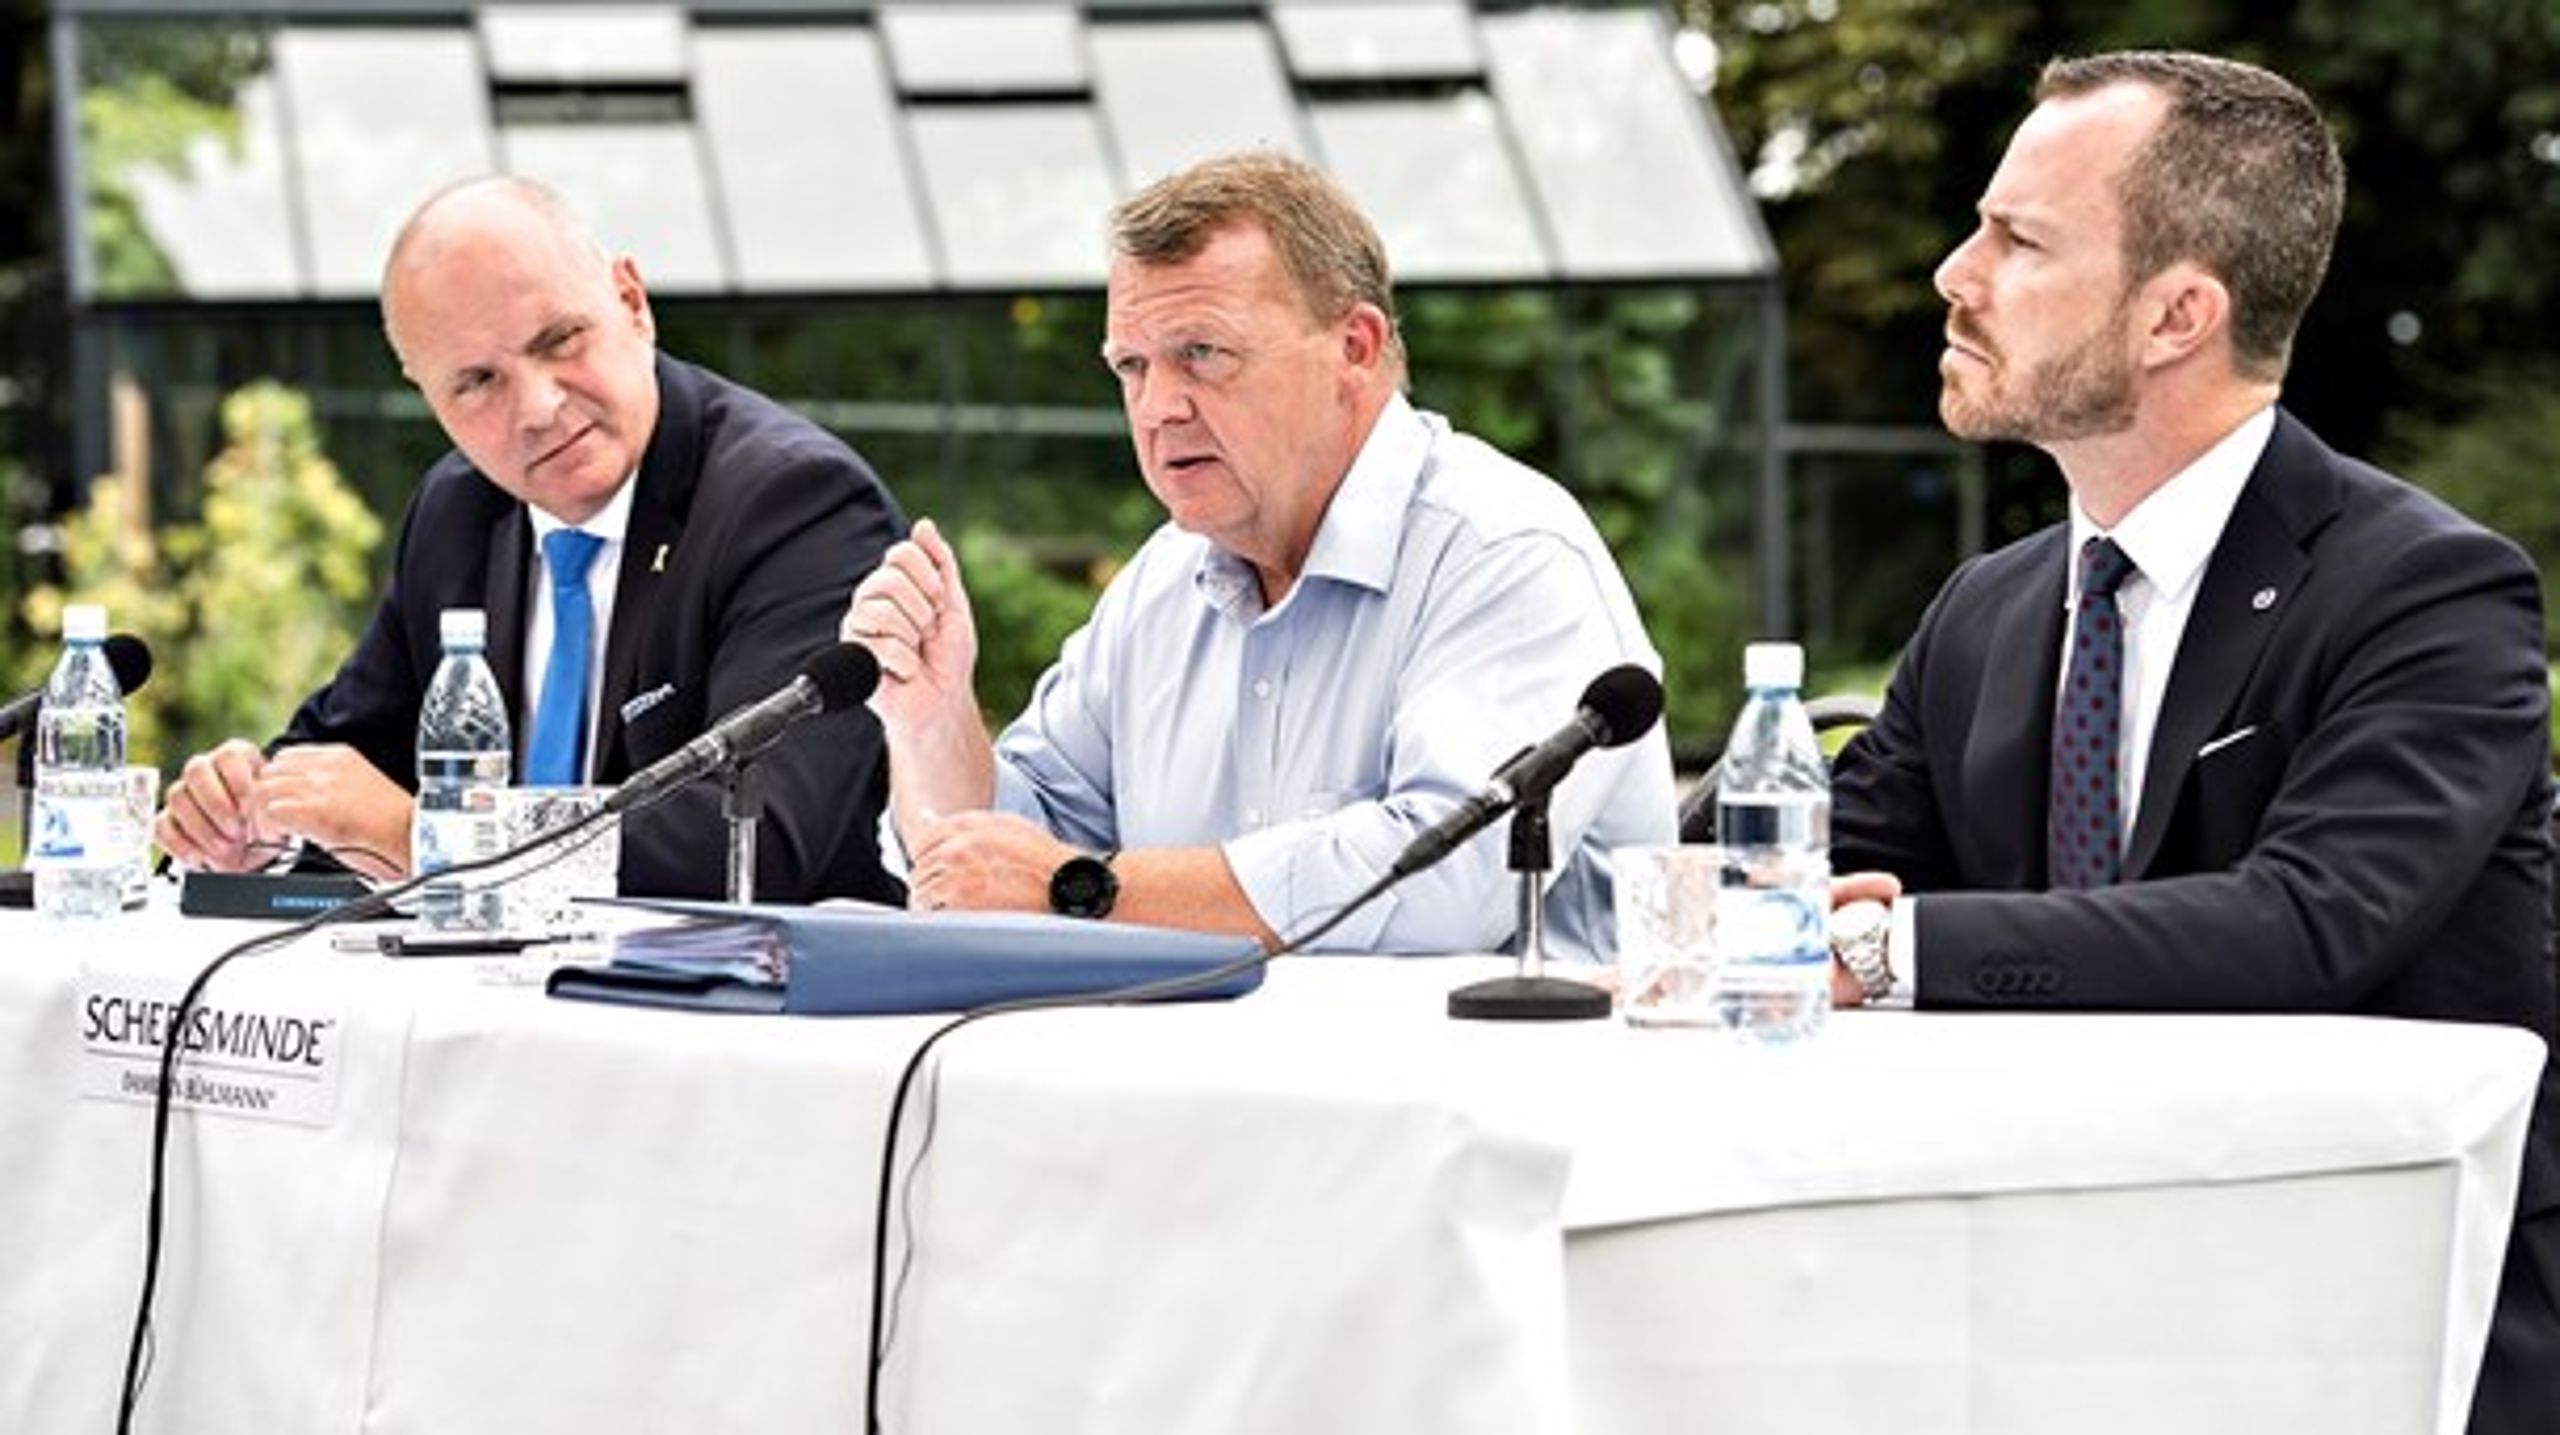 Søren Gade, Lars Løkke Rasmussen og Jakob Ellemann-Jensen er nogle af hovedpersonerne i de interne stridigheder i Venstre. Arkivfoto fra 2017.